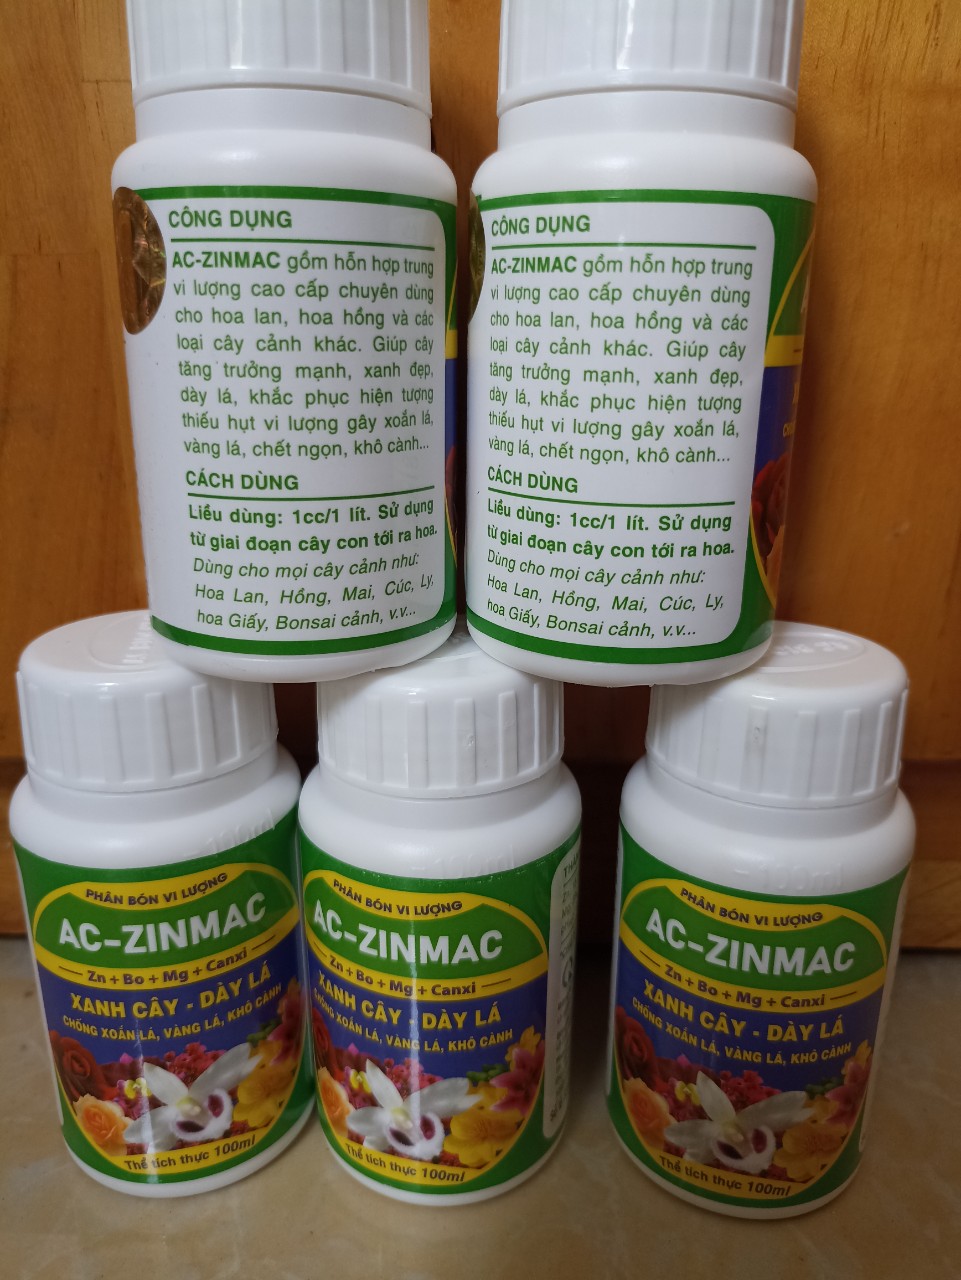 Phân bón vi lượng AC -ZINMAC bổ sung Zn+Bo+Mg+Canxi giúp xanh cây dày lá - chai 100ml